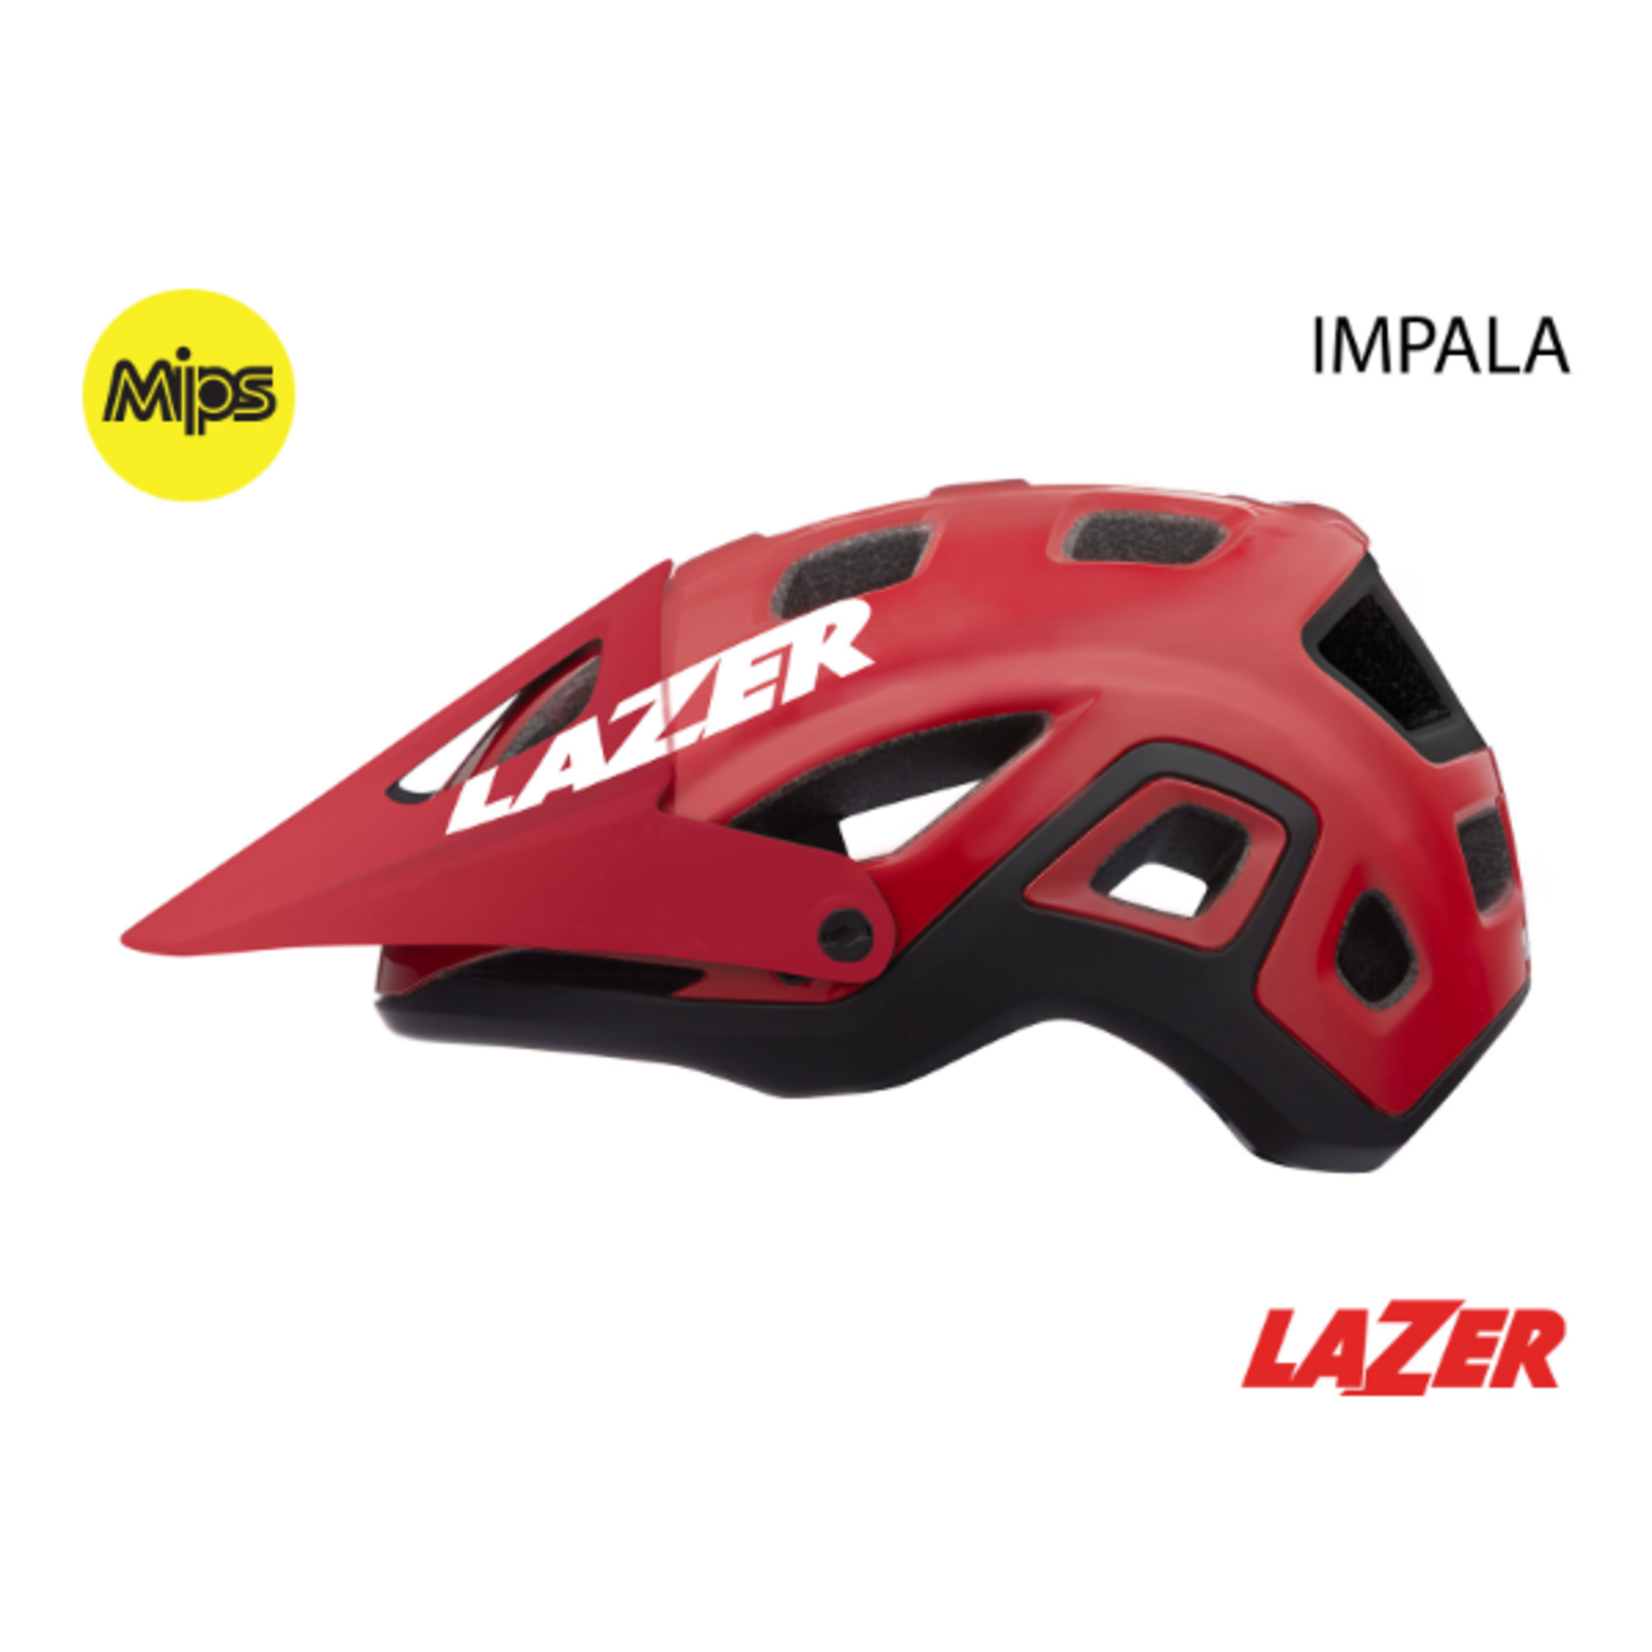 Lazer IMPALA MIPS MTB Helmet